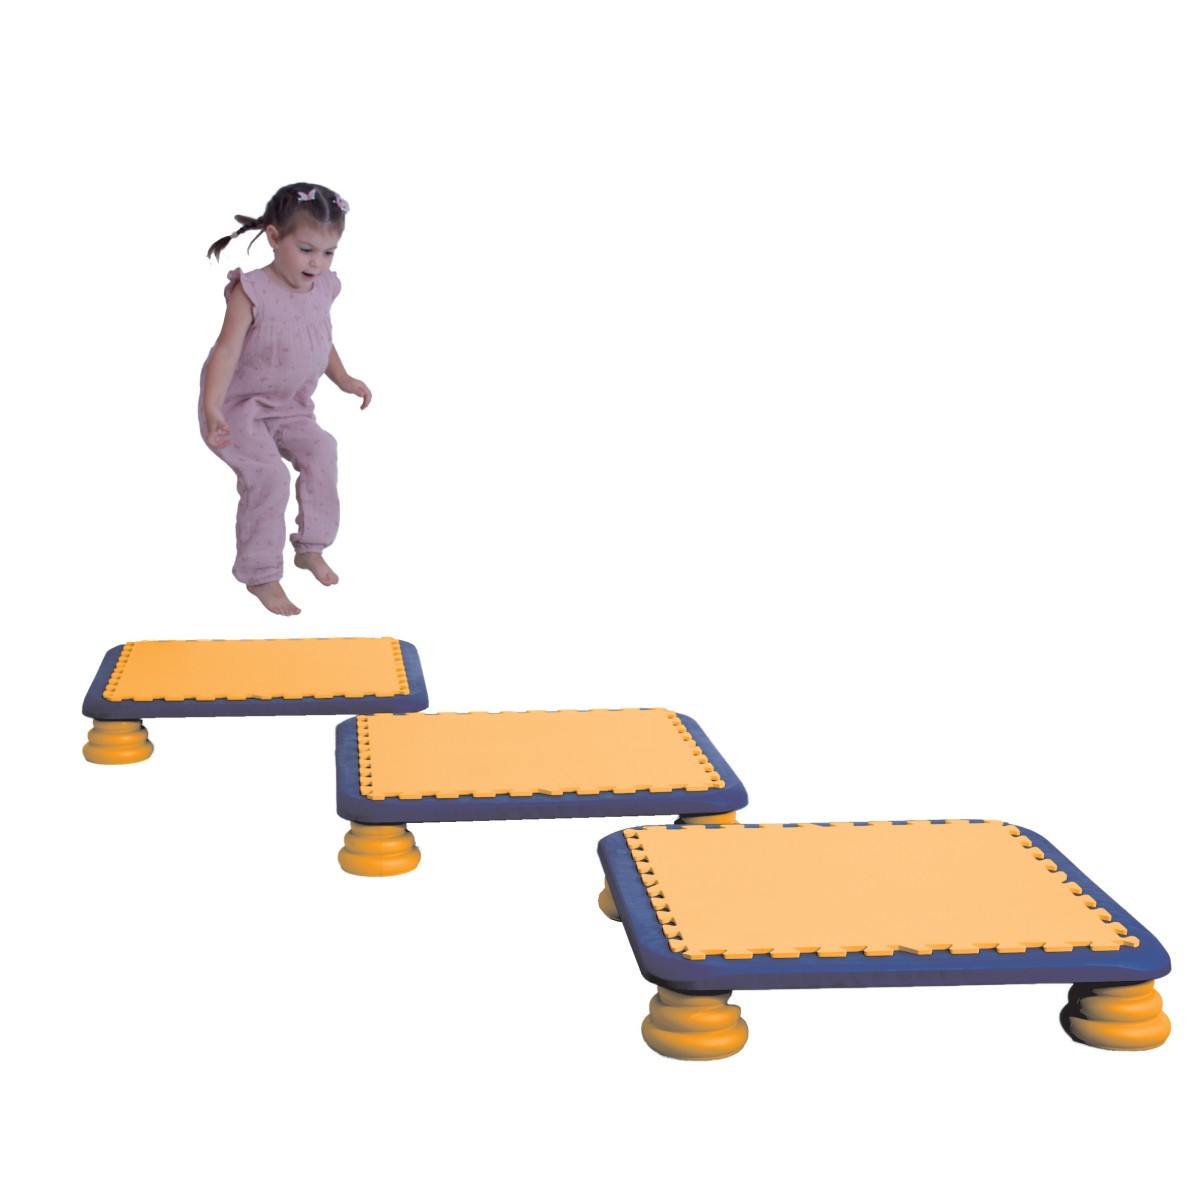 Planche trampoline rebondissante Planche trampoline rebondissante, pour les jeux en intérieur et à l'extérieur des enfants.
Cett